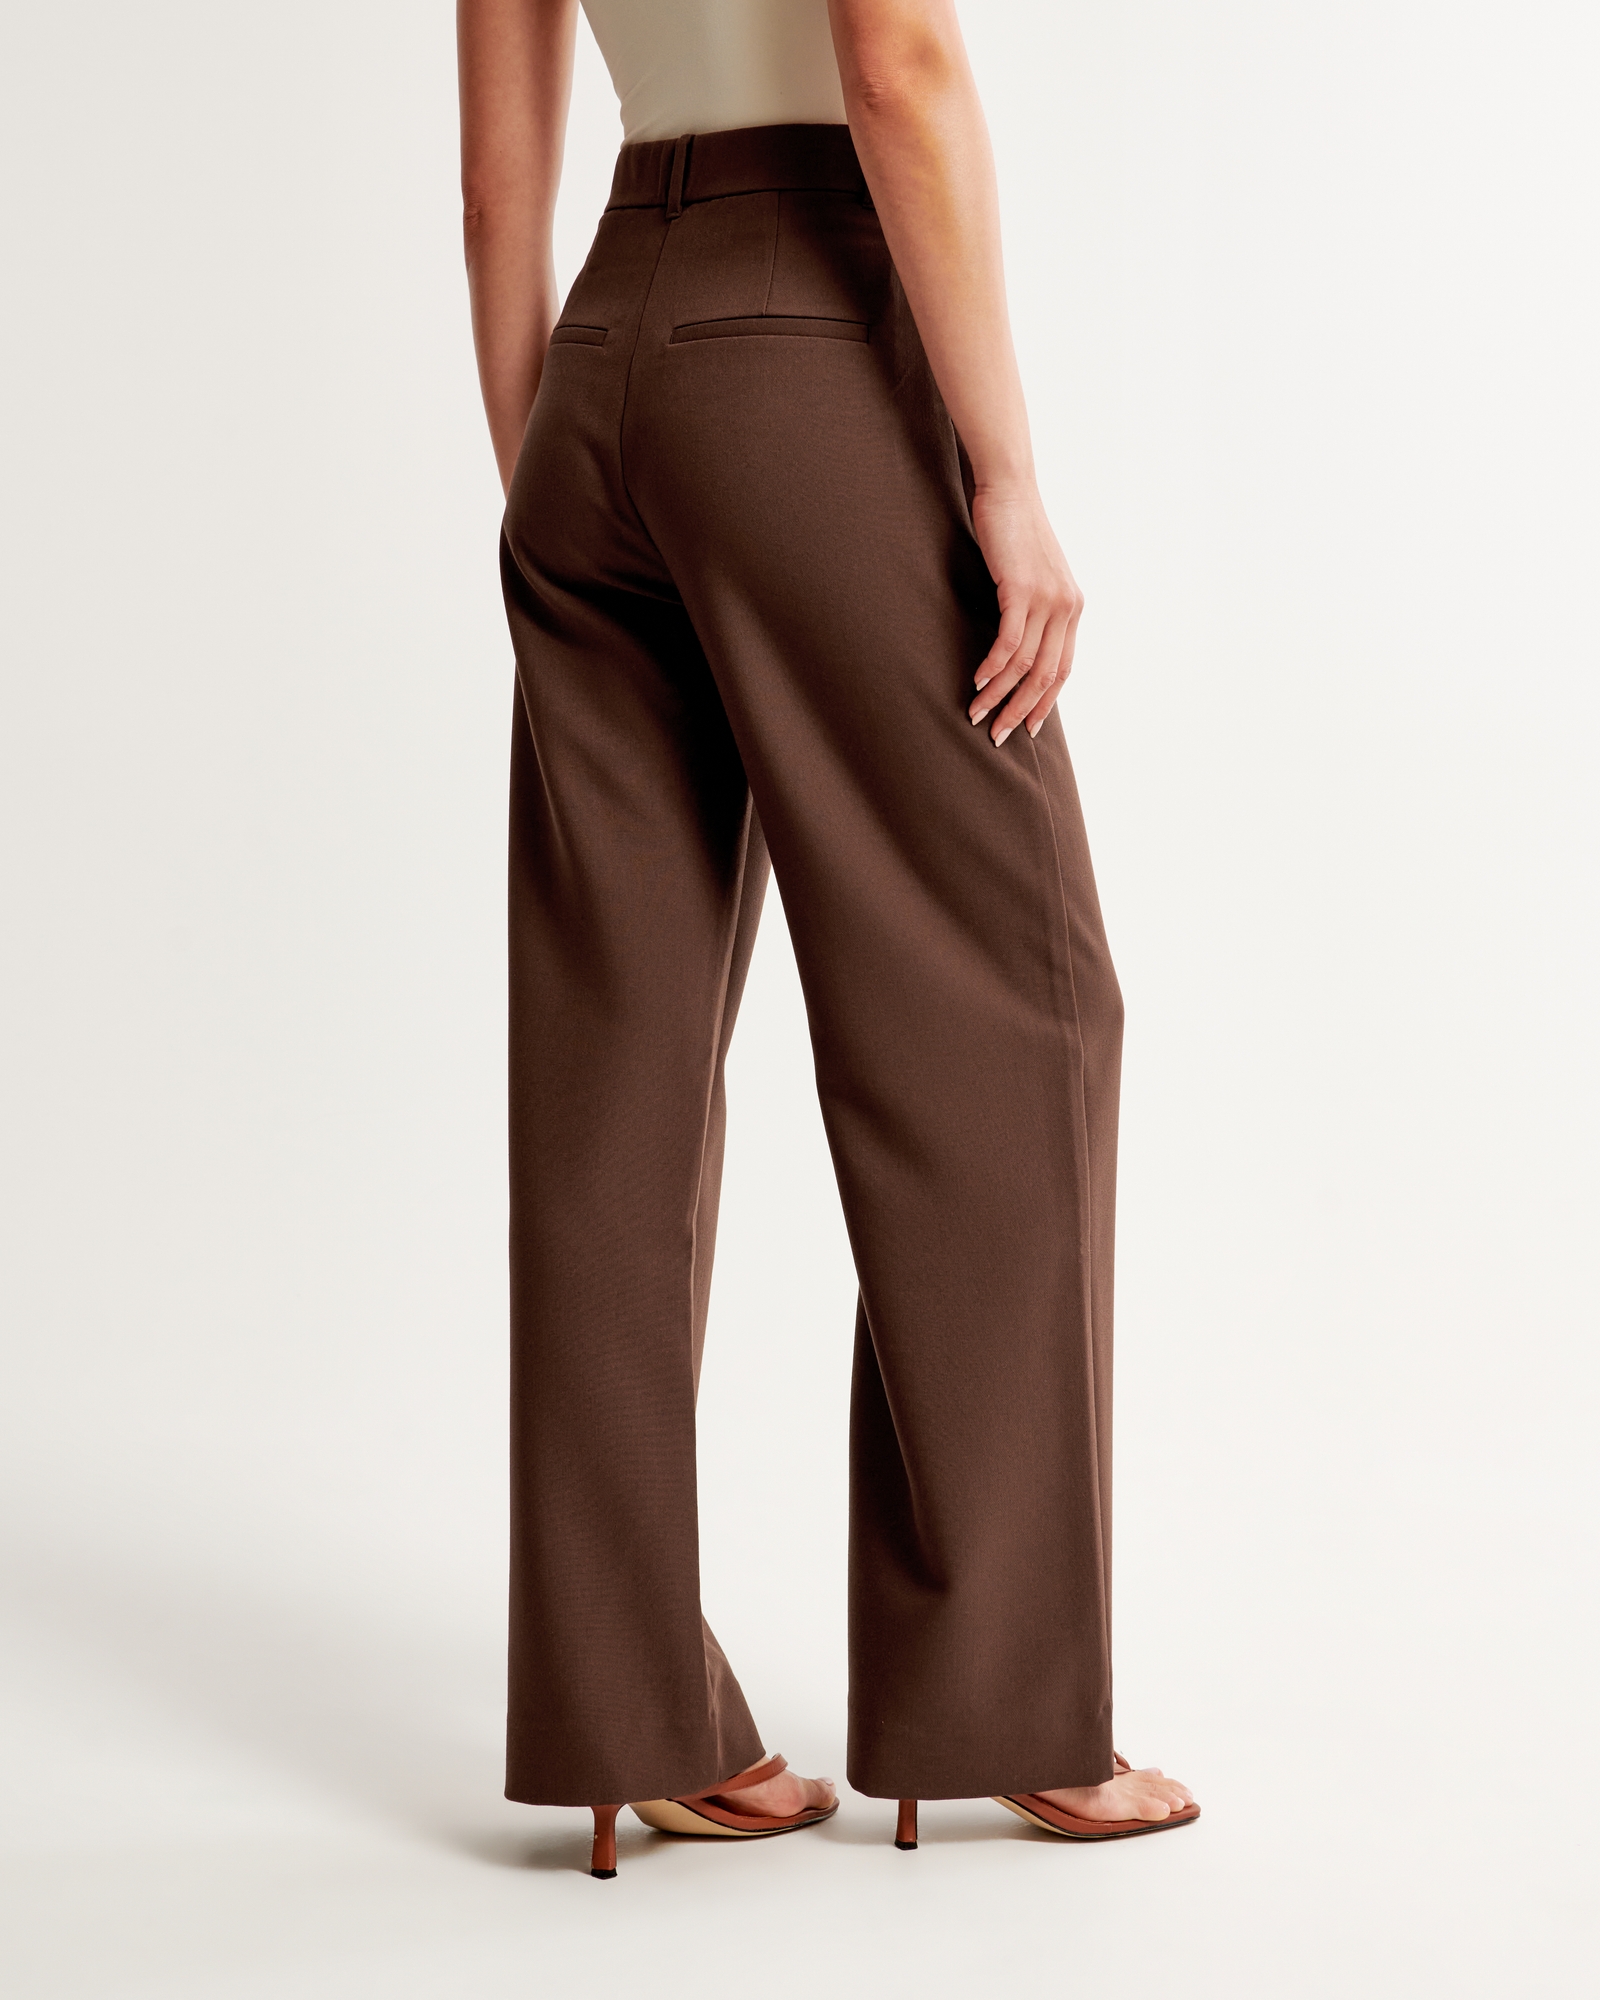 Lands End Slacks Pants Woman's Fit 2 Size 14 Brown RN 62830